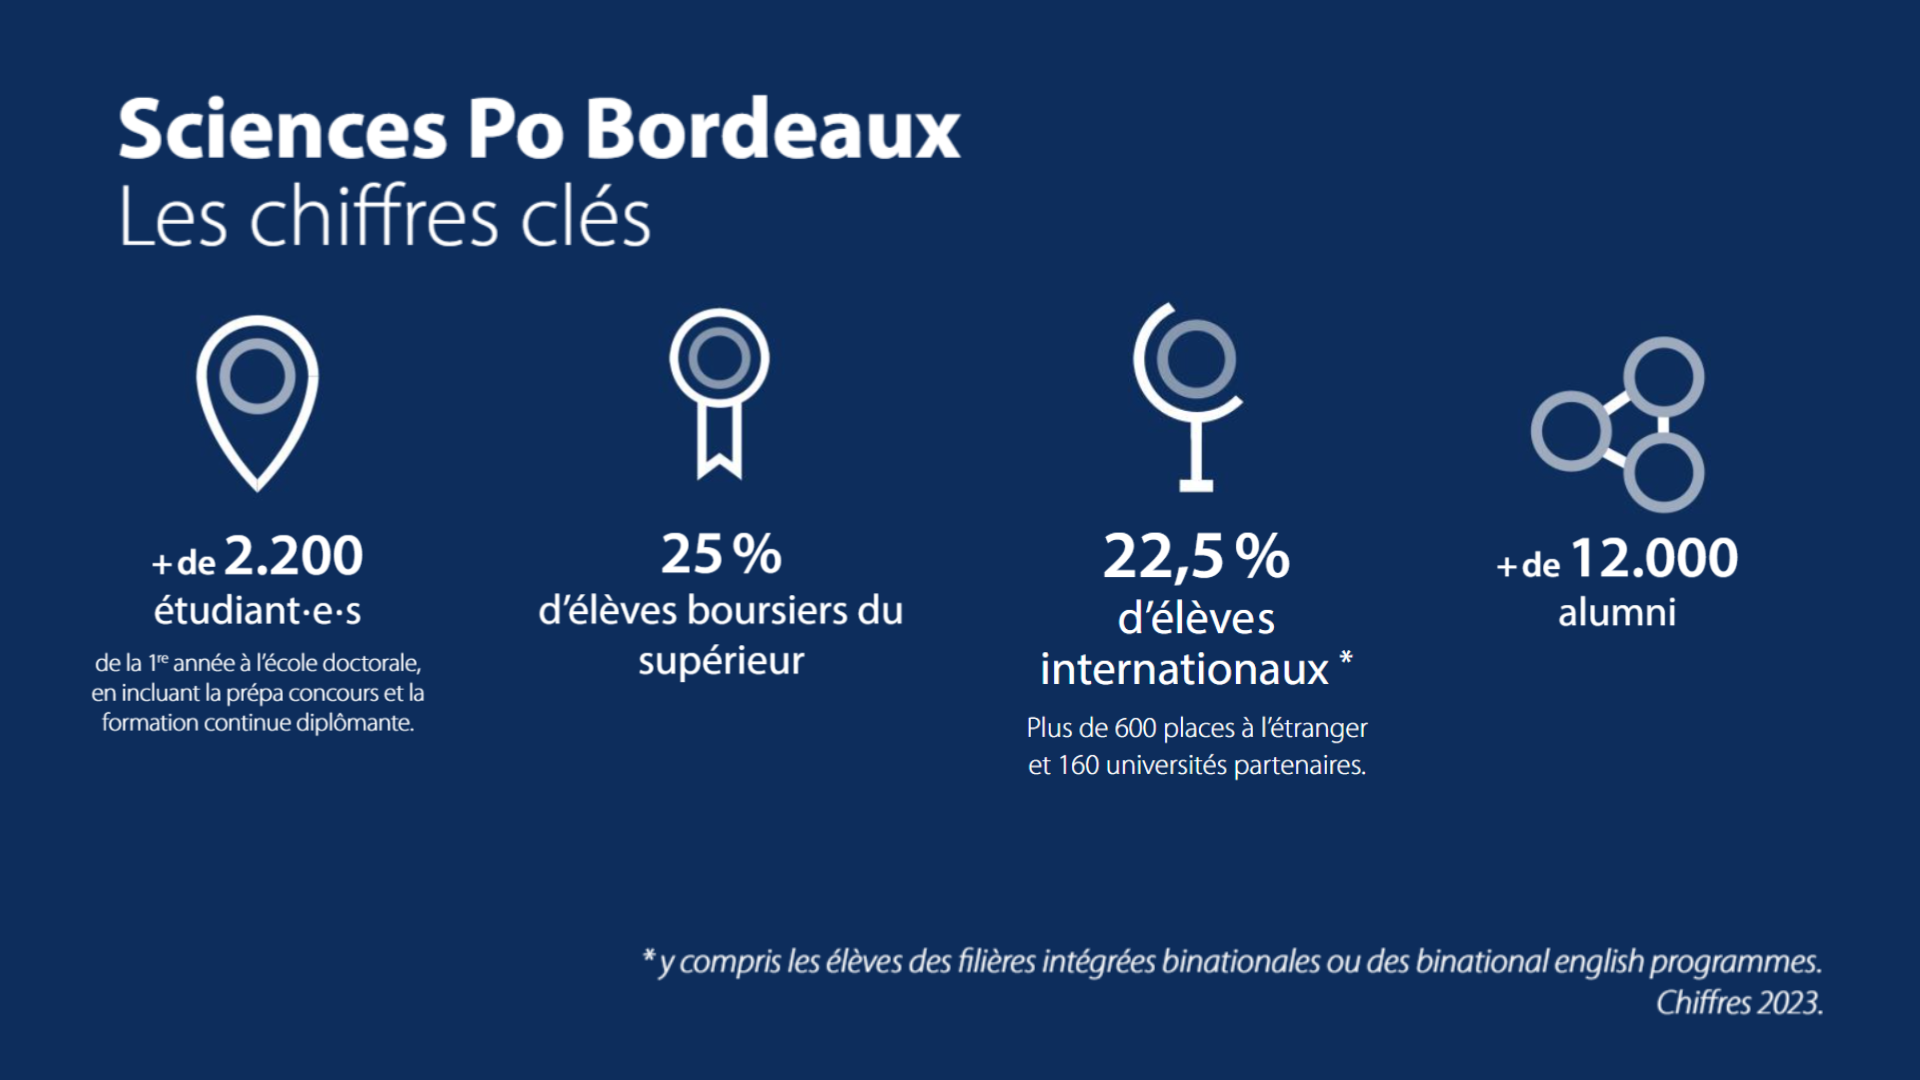 Quelques chiffres clés sur Sciences Po Bordeaux